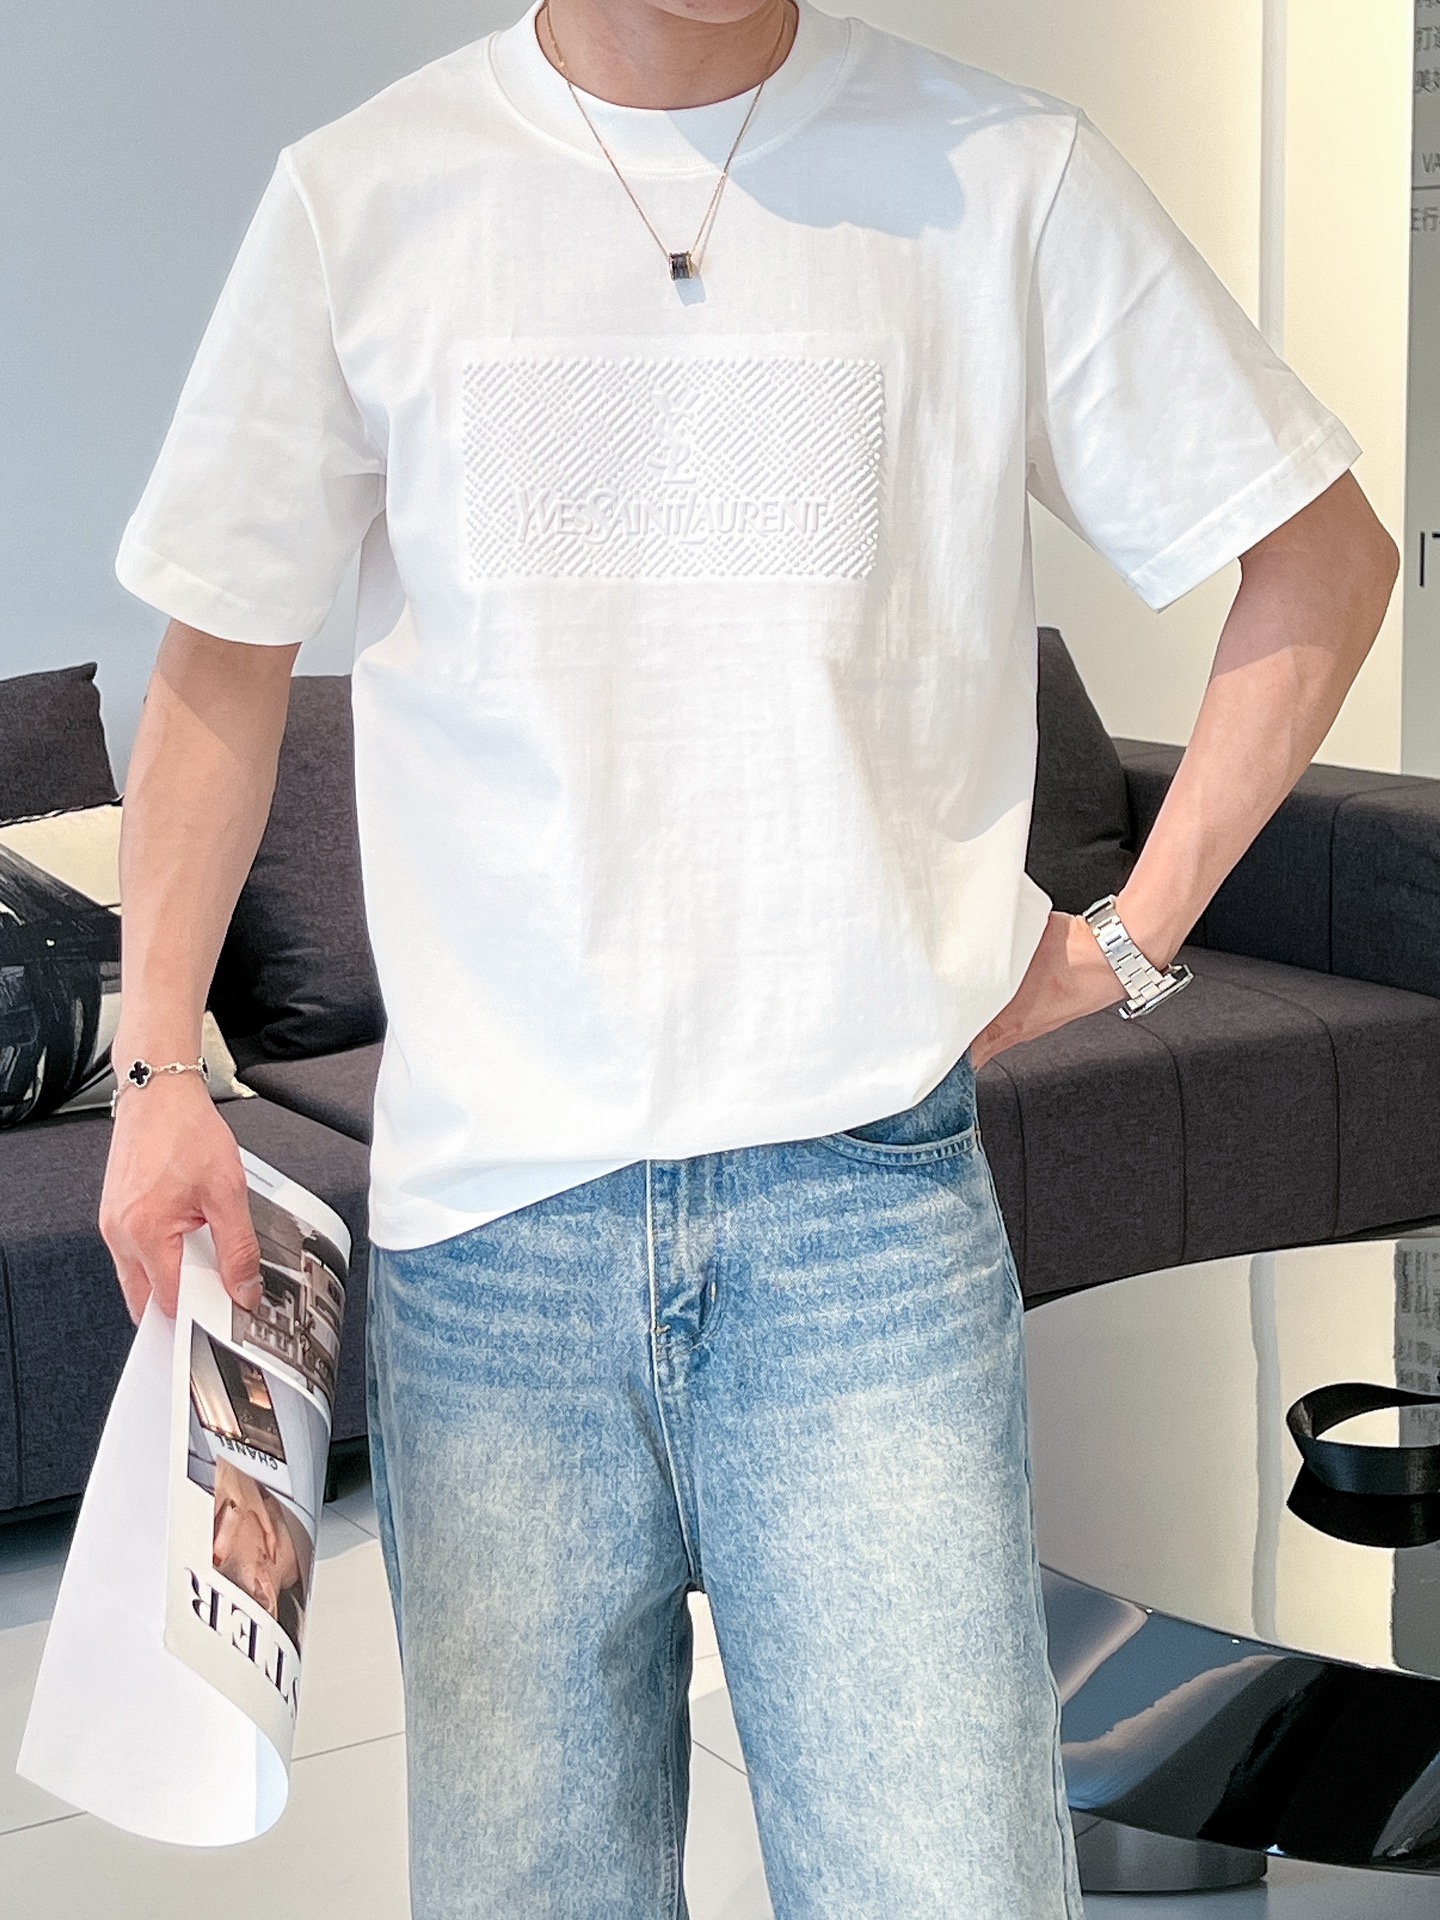 イヴ サン ローラン t シャツ偽物トップス 短袖 最新デザイン ロゴプリント 柔らかい 純綿 メンズ ホワイト_2